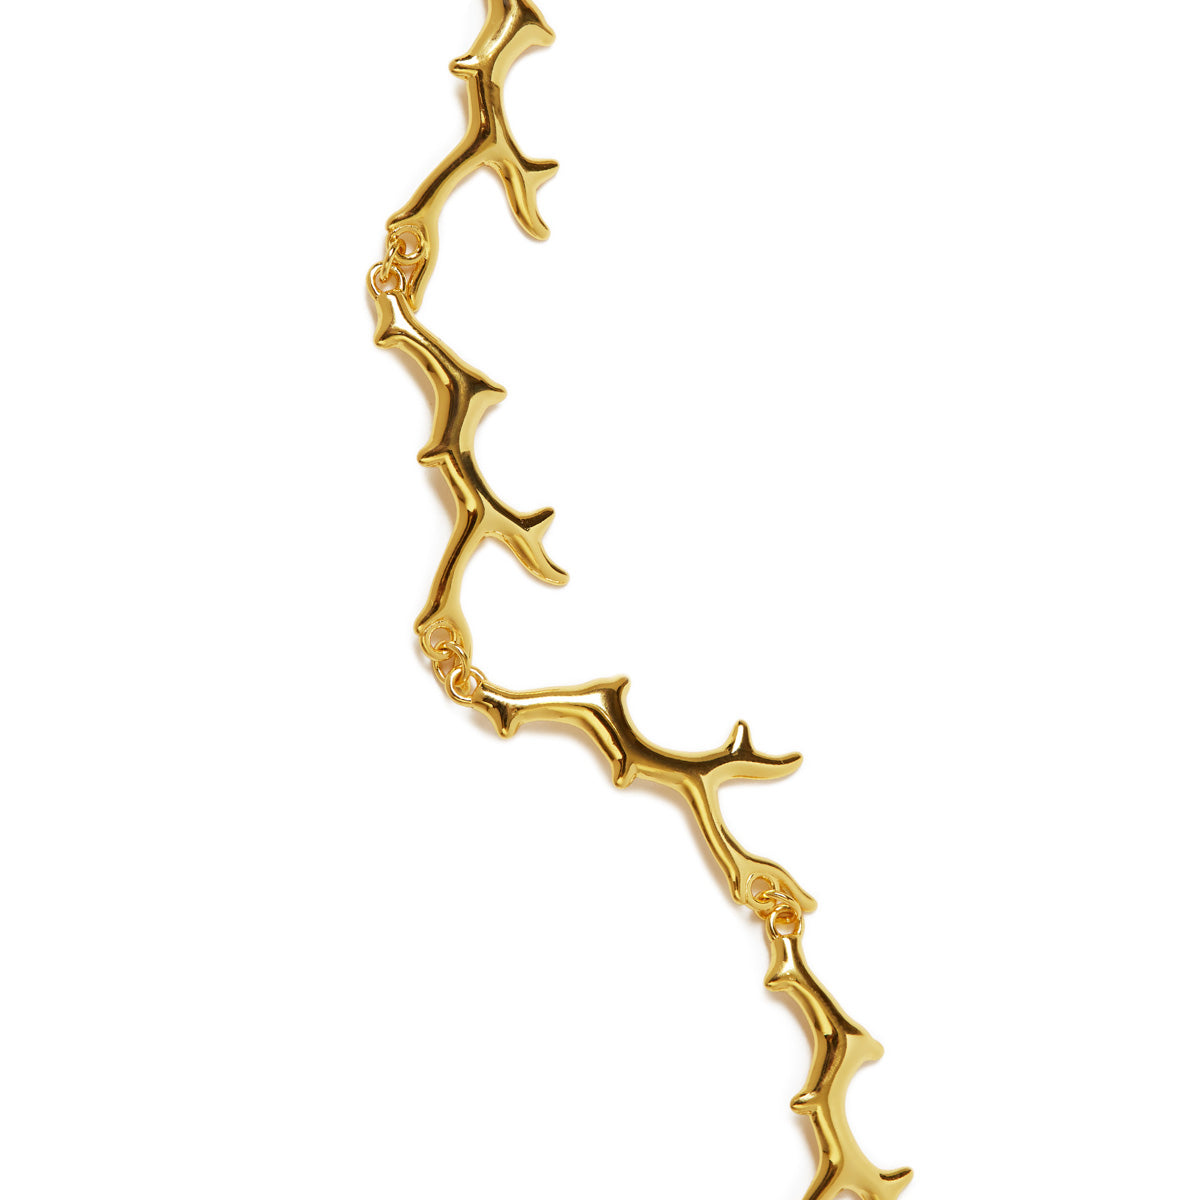 Coral Reef Gold Bracelet